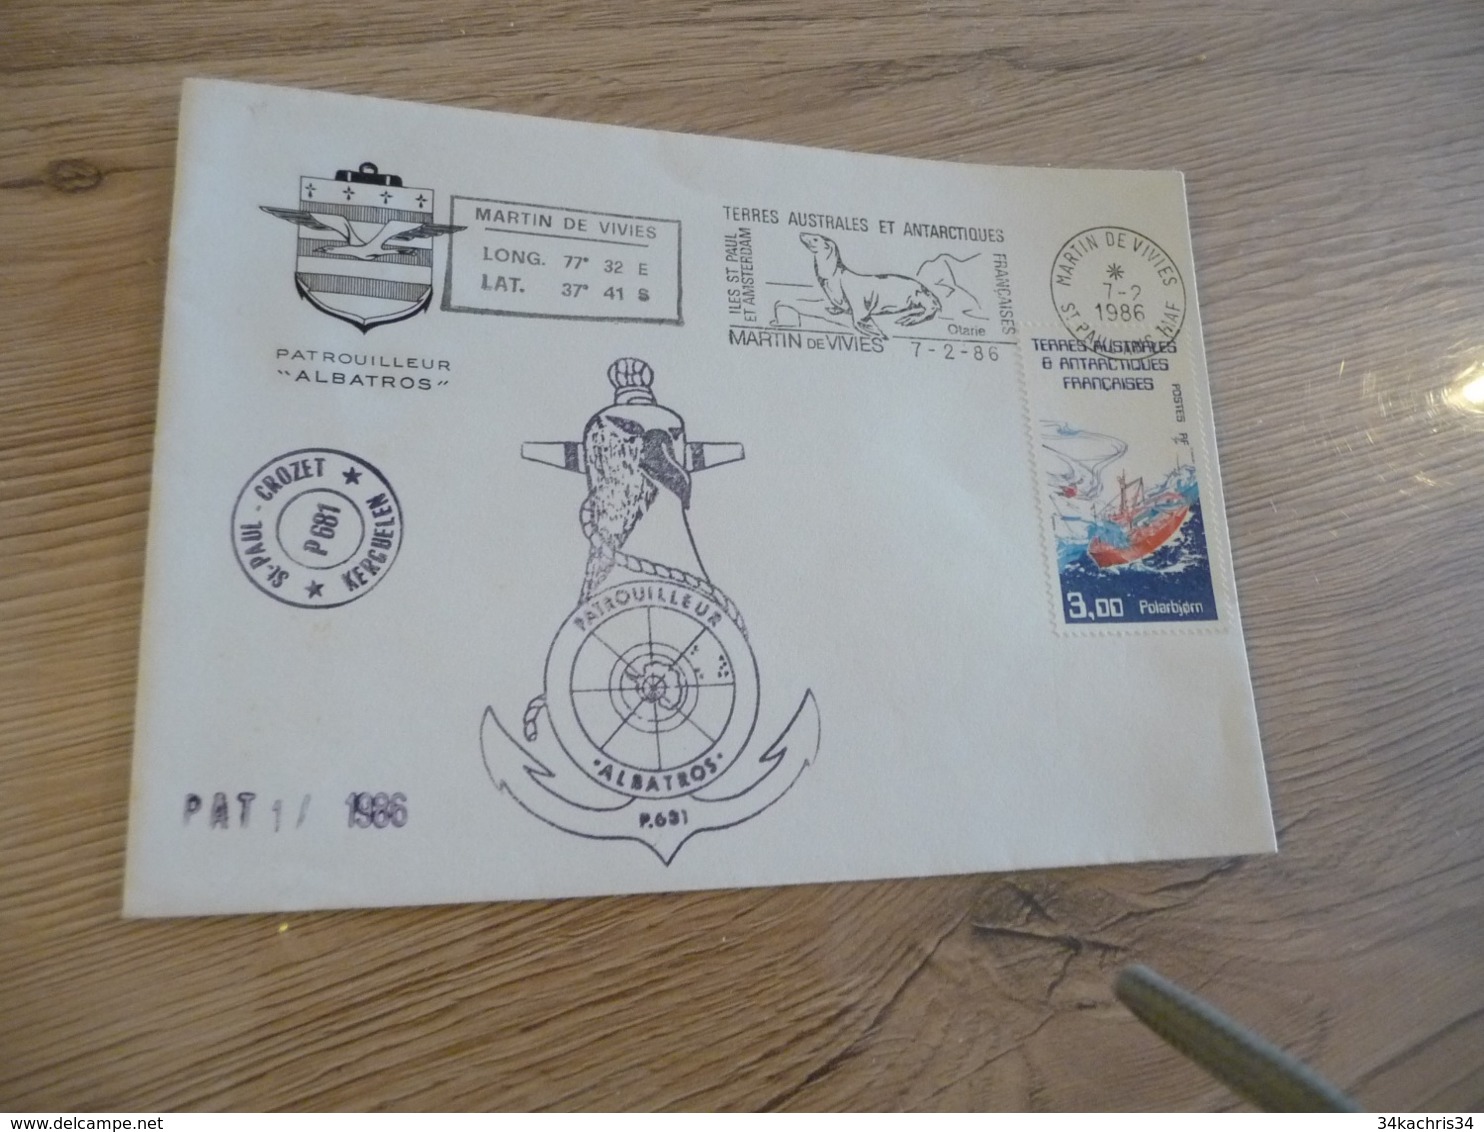 Lettre TAAF Saint Paul Crozet Patrouilleur Albatros  1986 Autographes - Lettres & Documents